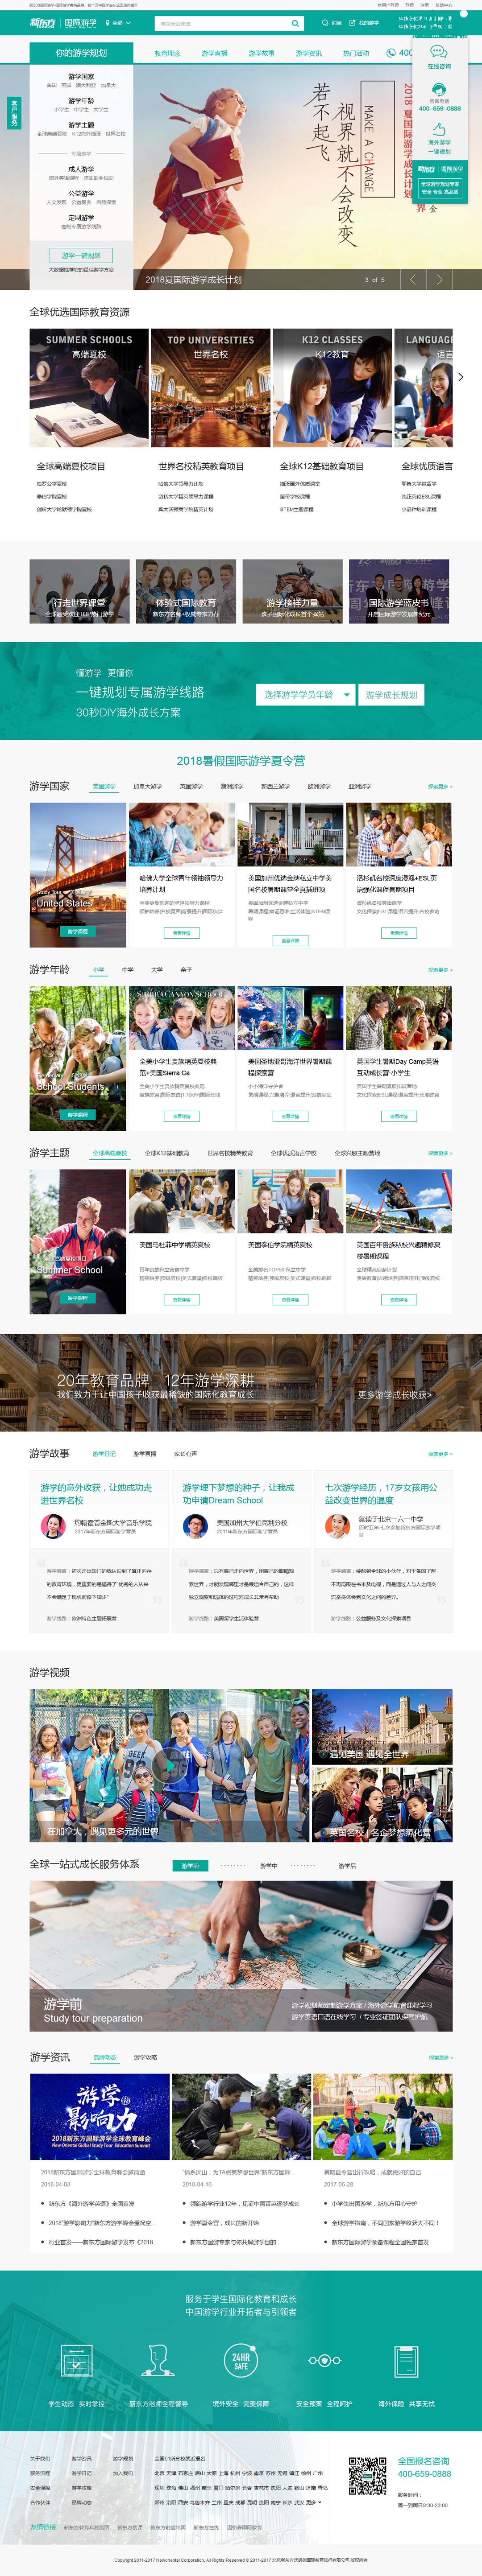 首页网站建设案例-新东方.jpg